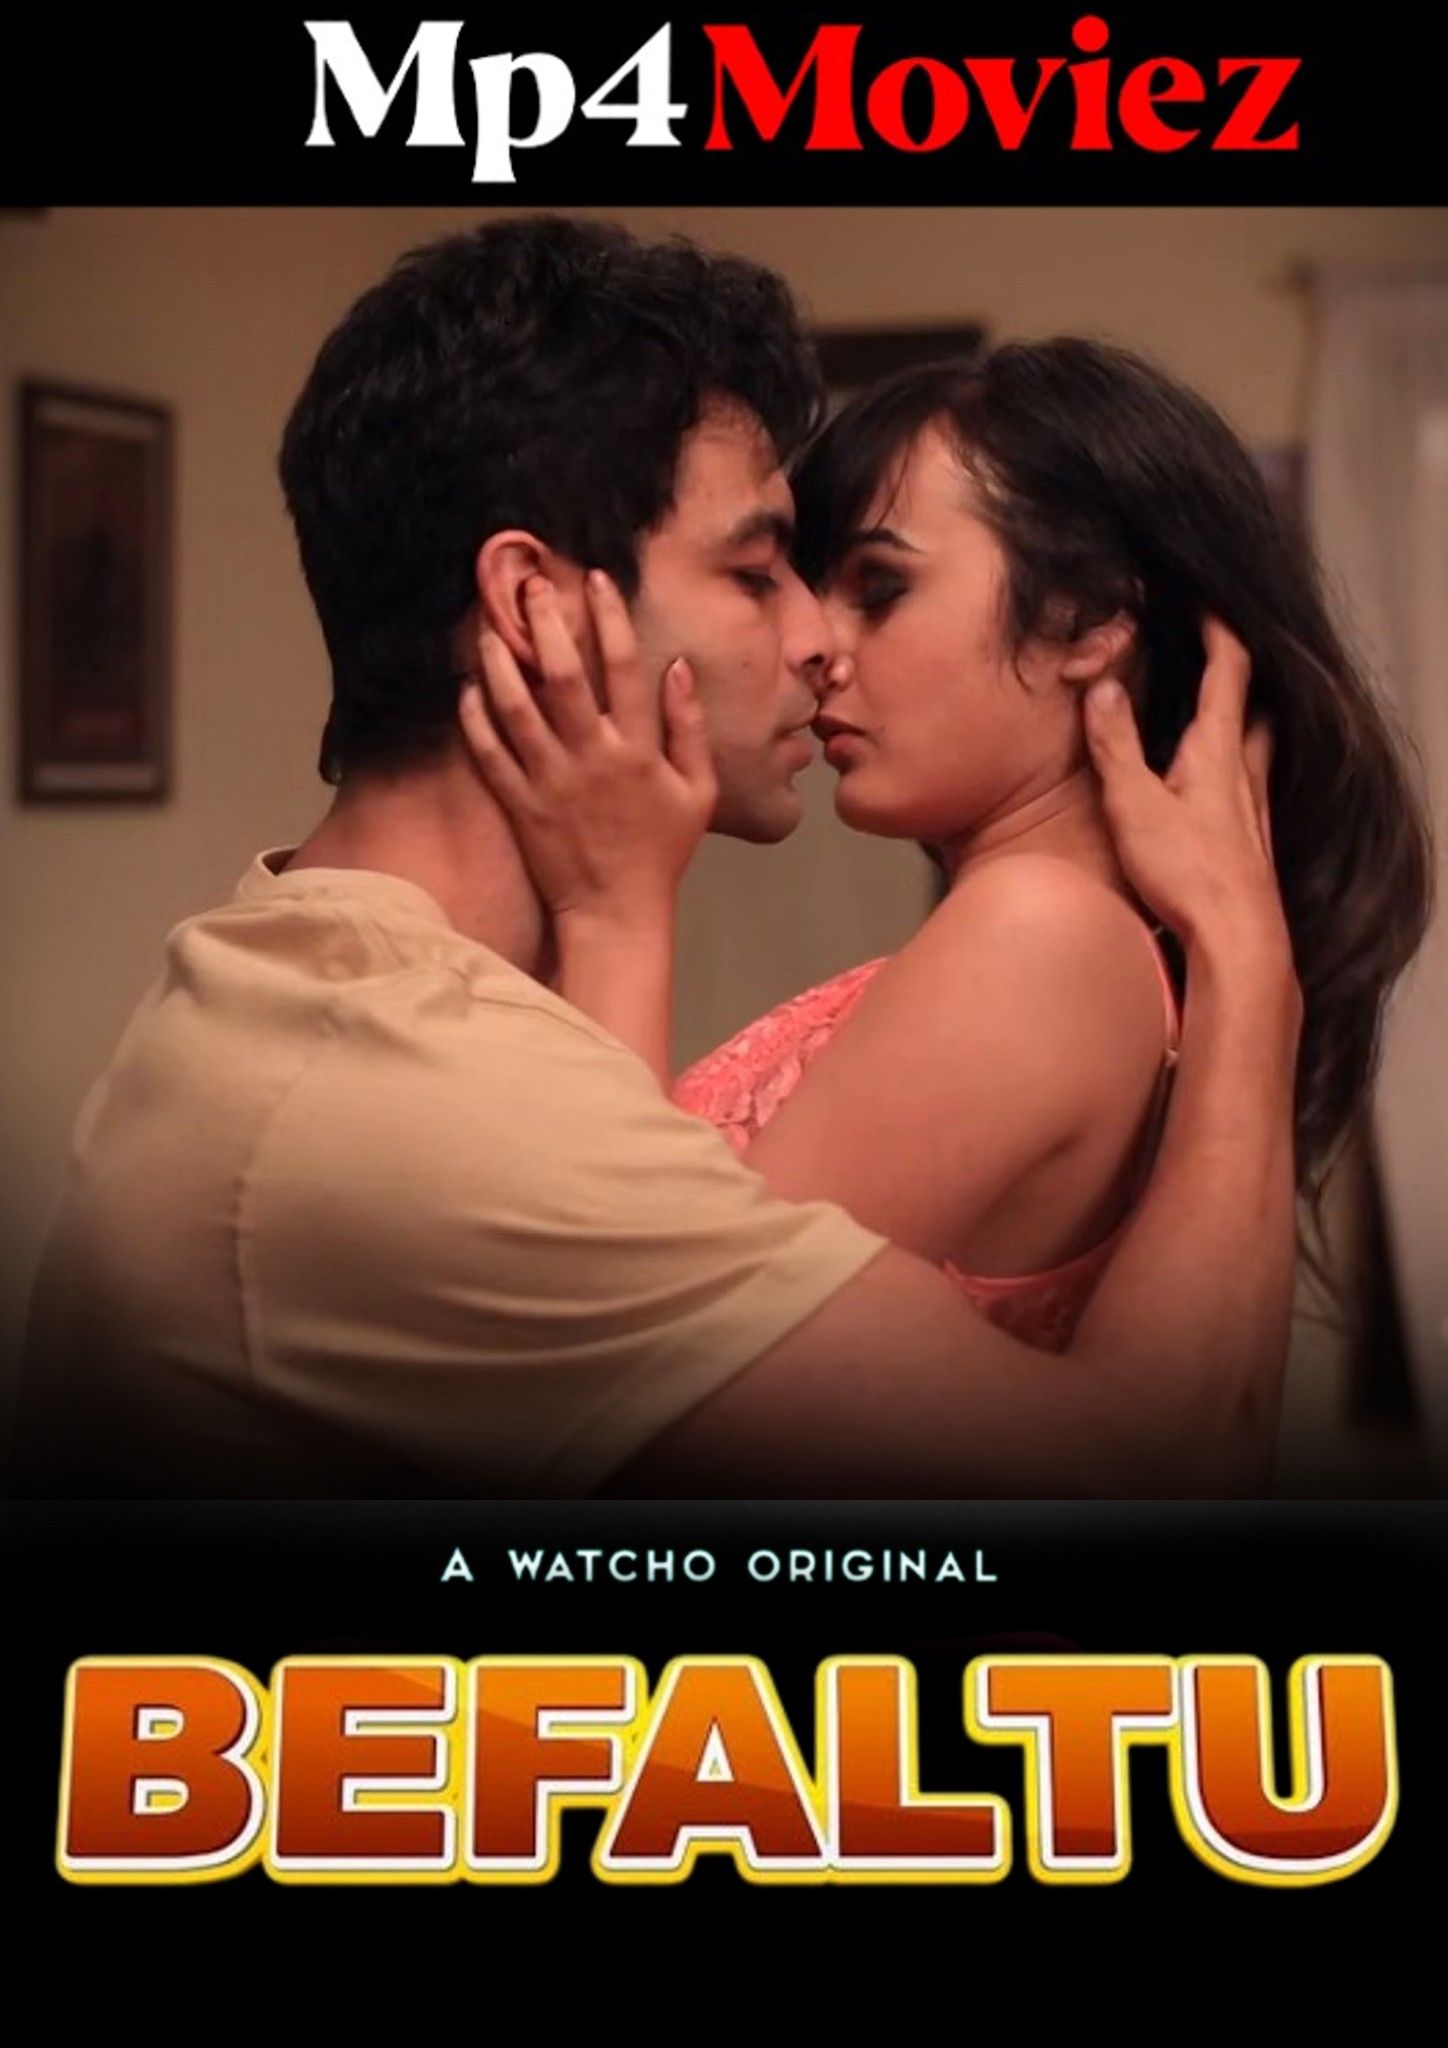 Befaltu (2021) S01 Hindi Watcho Web Series download full movie